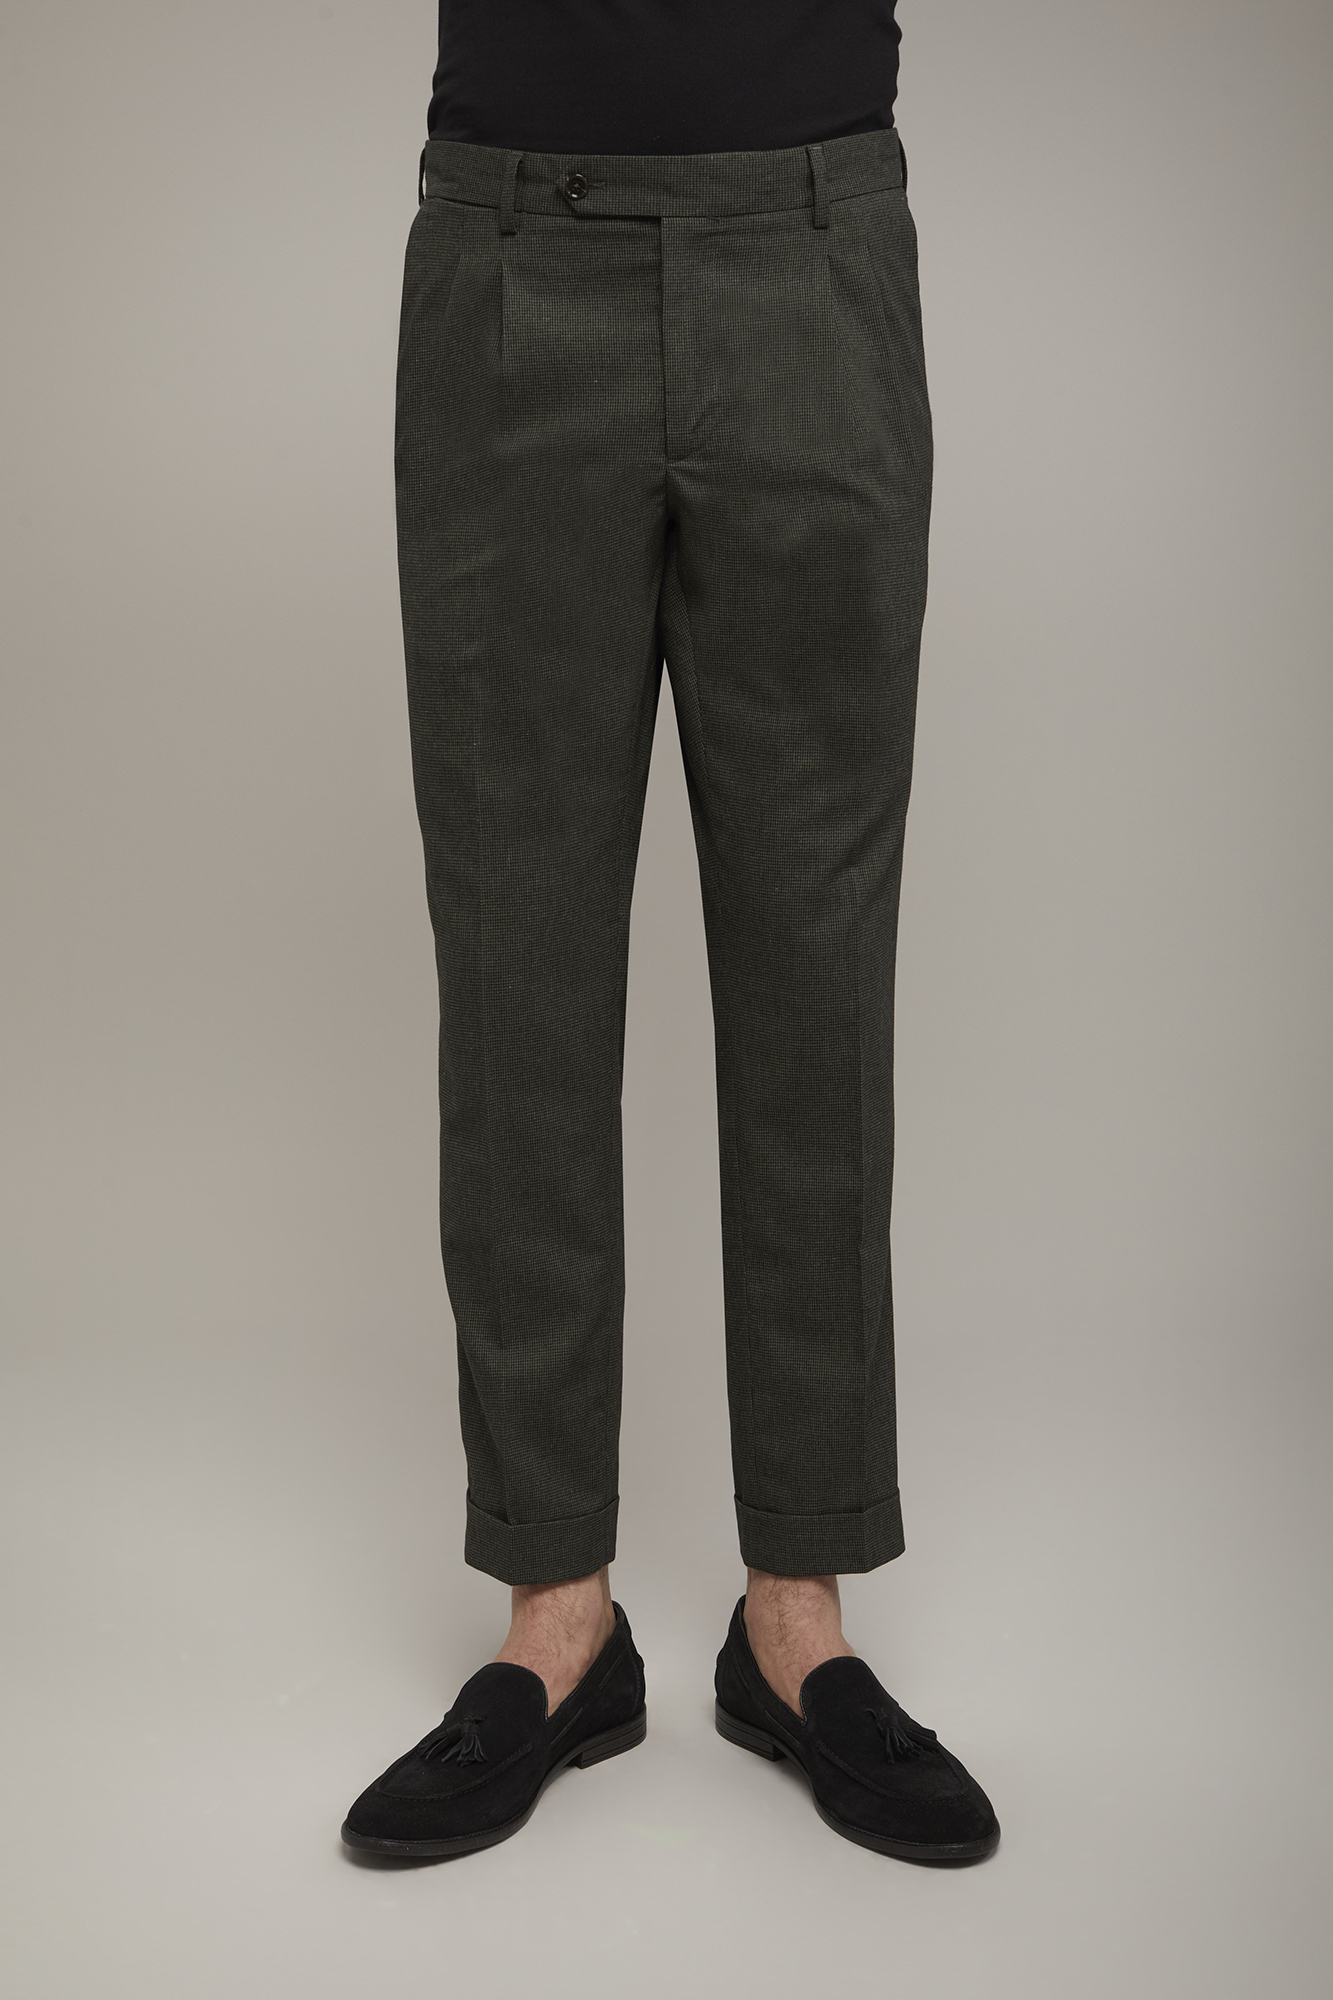 Pantalon homme classique à double pince, tissu avec motif micro pied-de-poule coupe régulière image number null